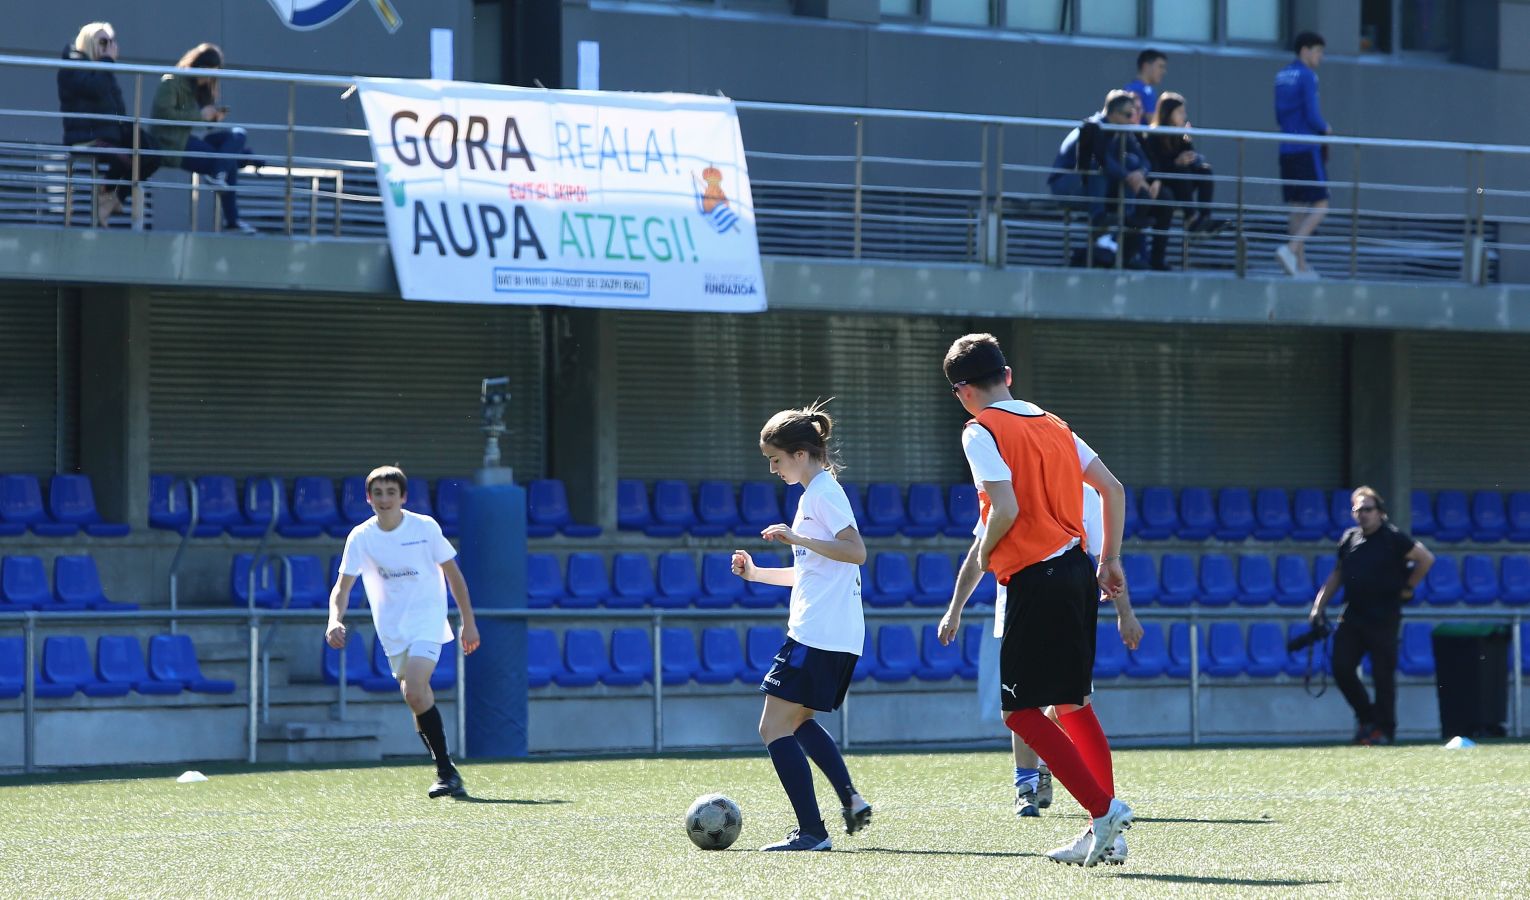 El torneo se ha celebrado el miércoles en Zubieta